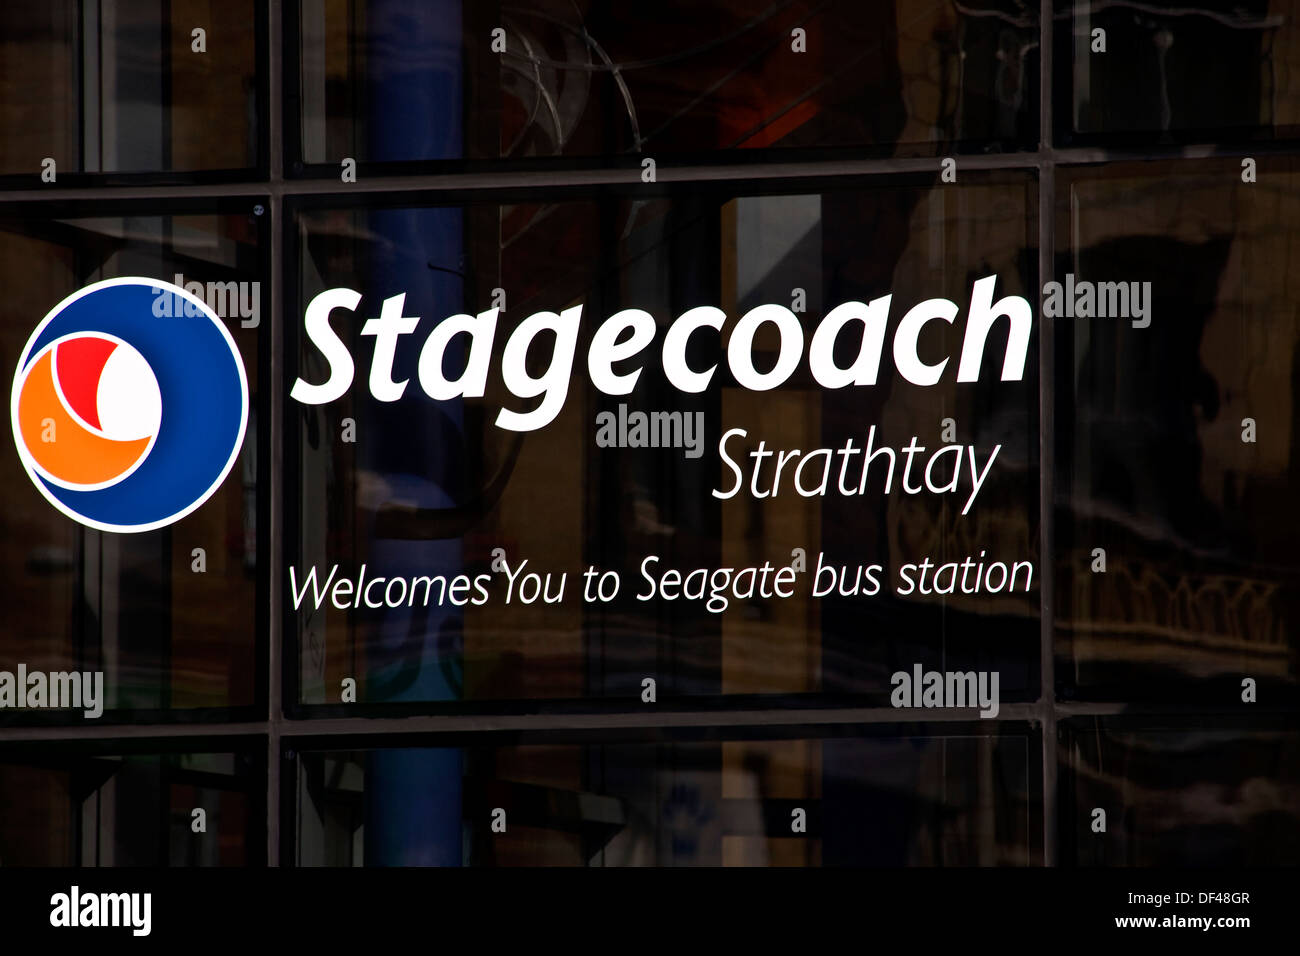 Stagecoach Strathtay "begrüßt Sie zum Busbahnhof von Seagate" gedruckt über den Haupteingang Fenstern in Dundee, Großbritannien Stockfoto